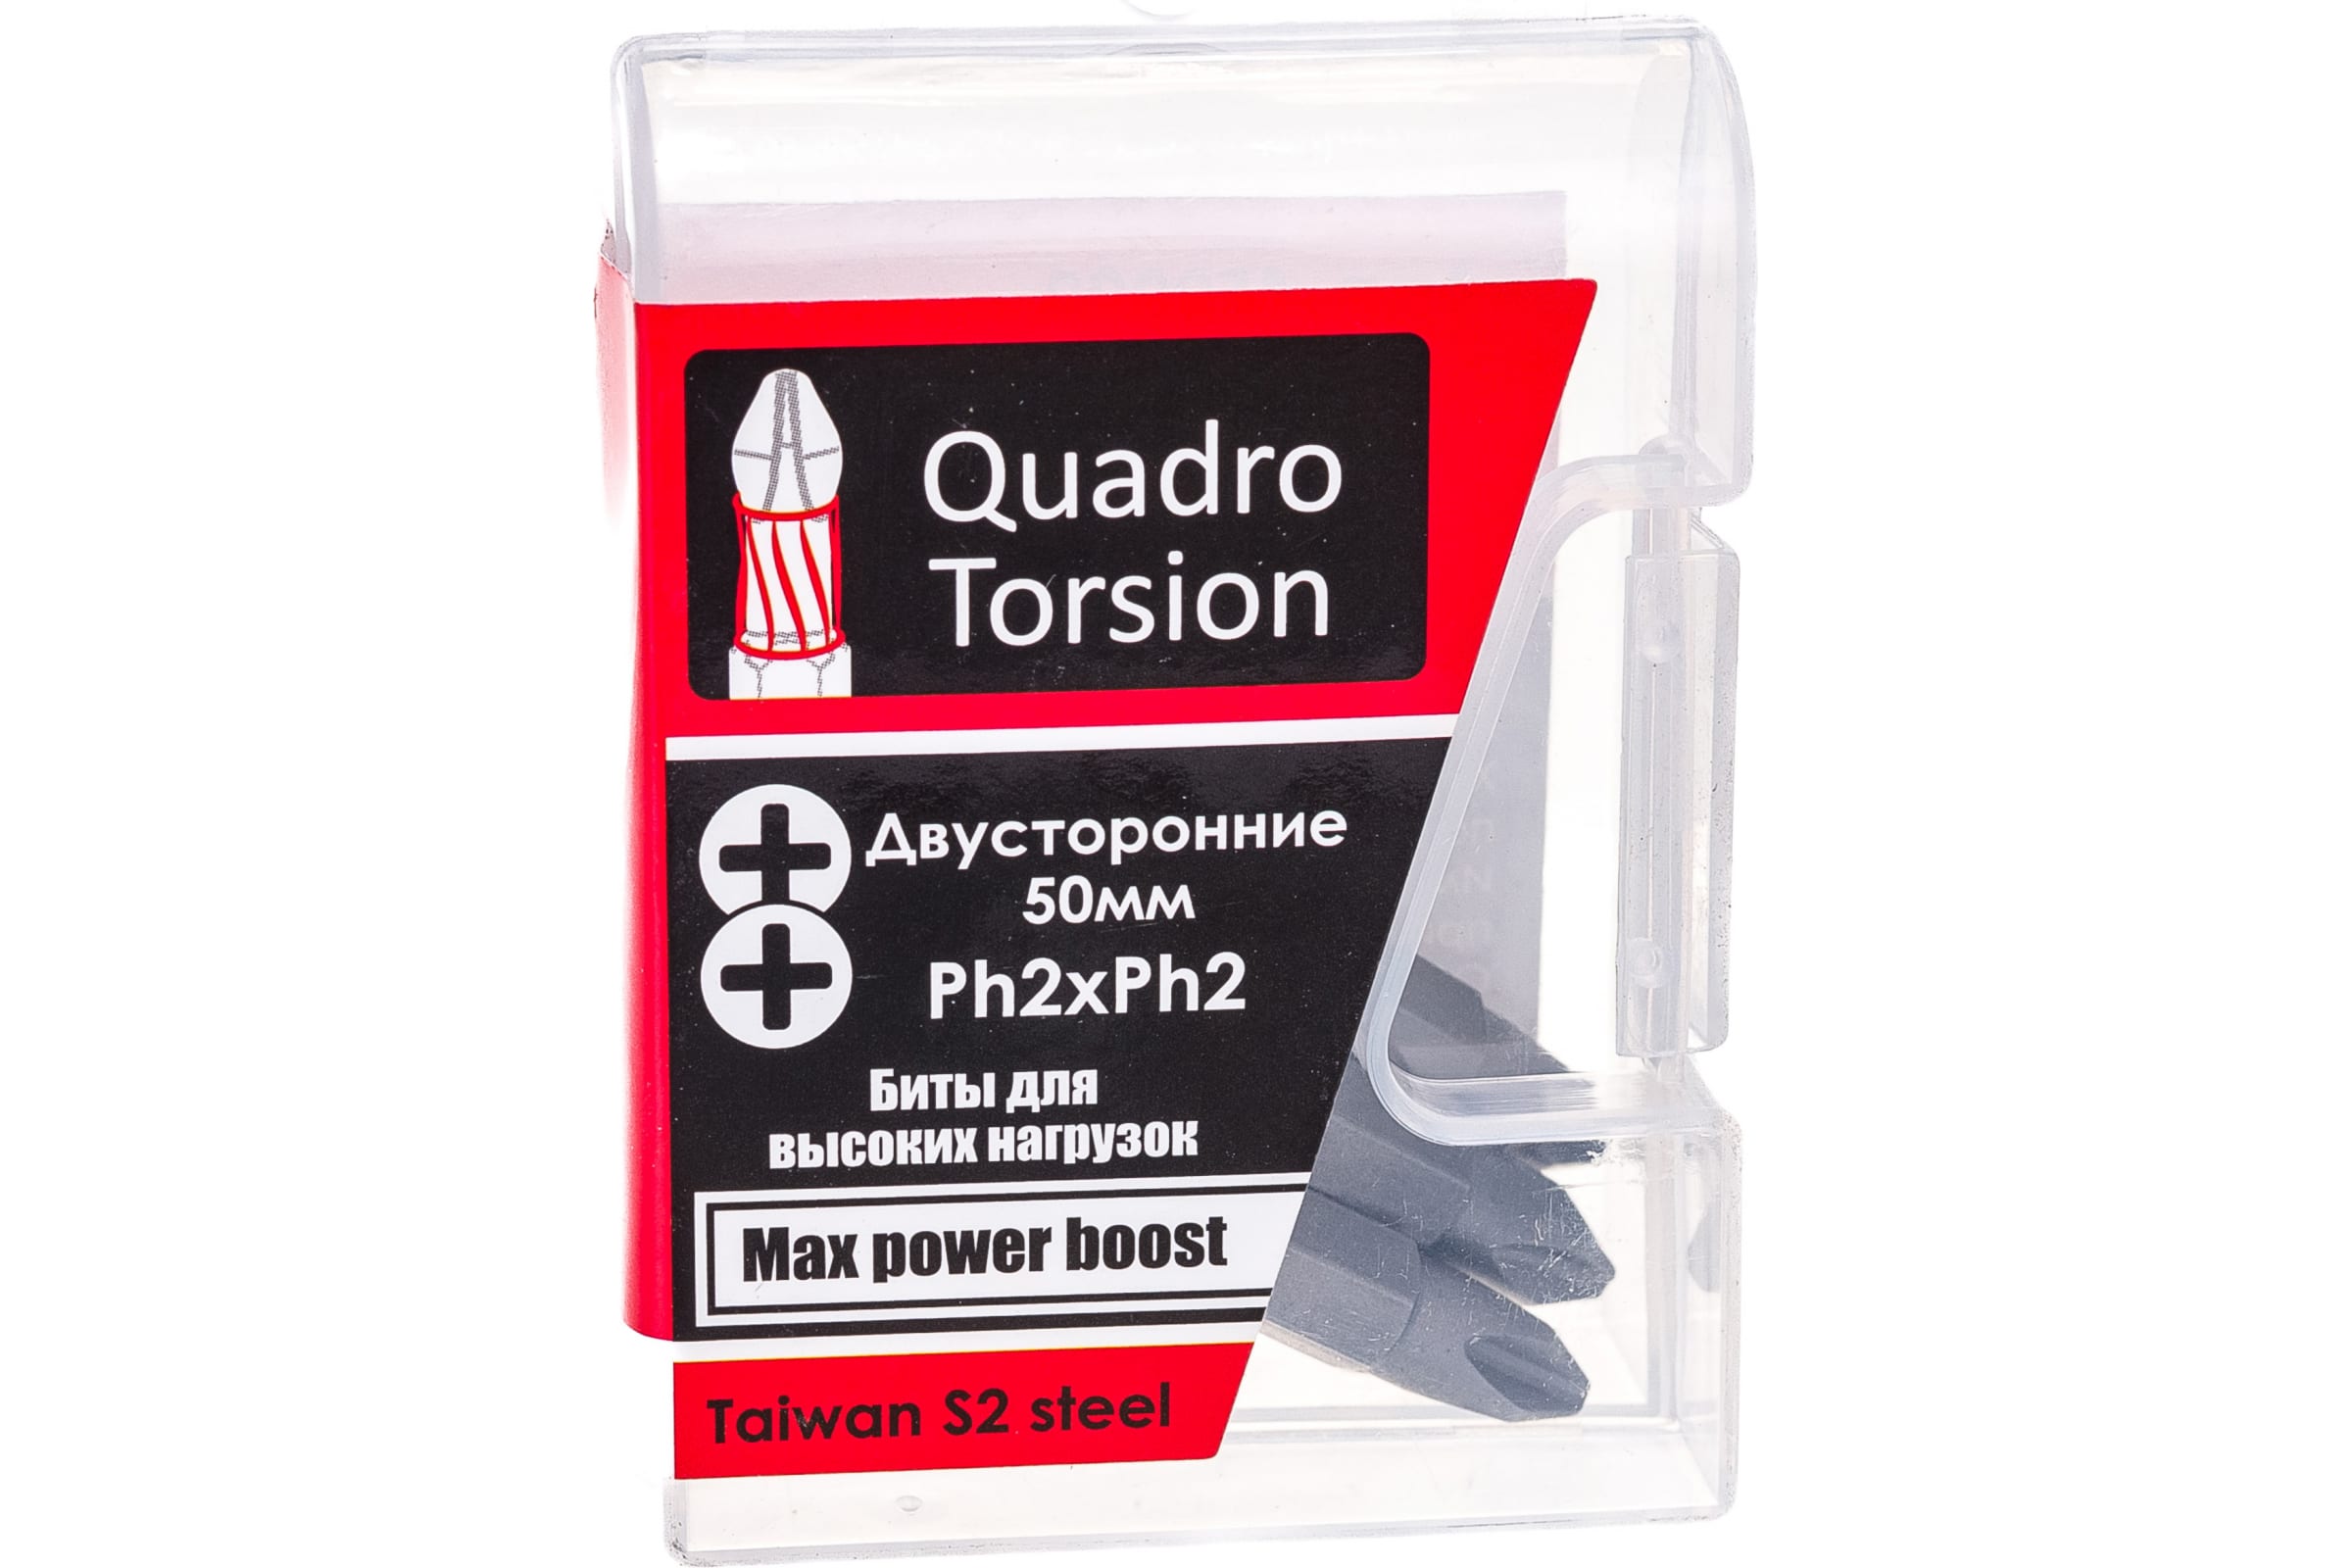 Quadro Torsion бита 1/4 двусторонняя Ph2xPh2 - 50мм 5шт./кор. 450022 двусторонняя бита bosch